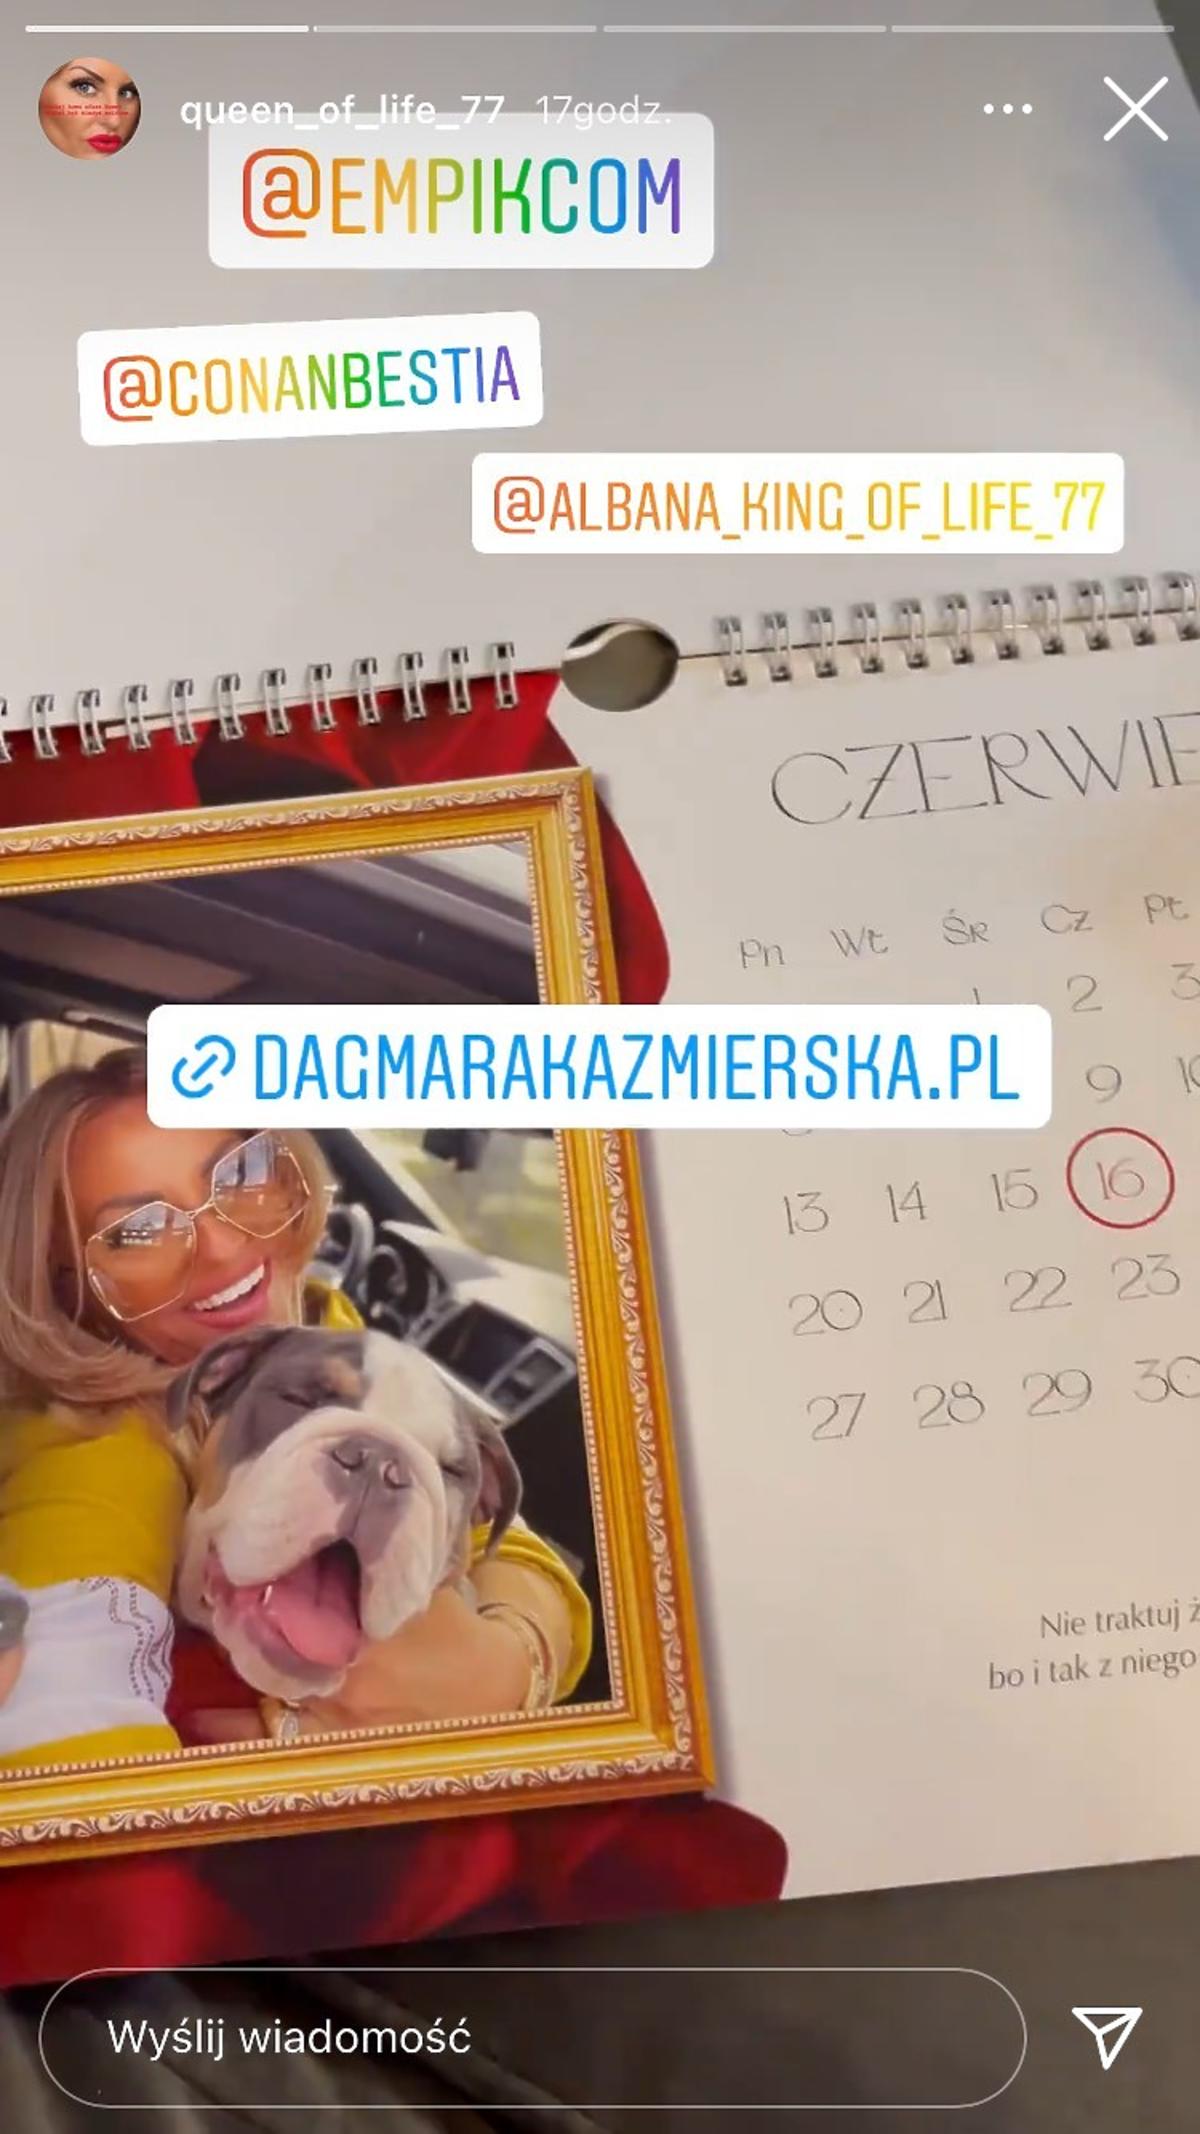 Dagmara Kaźmierska i album zdjęć